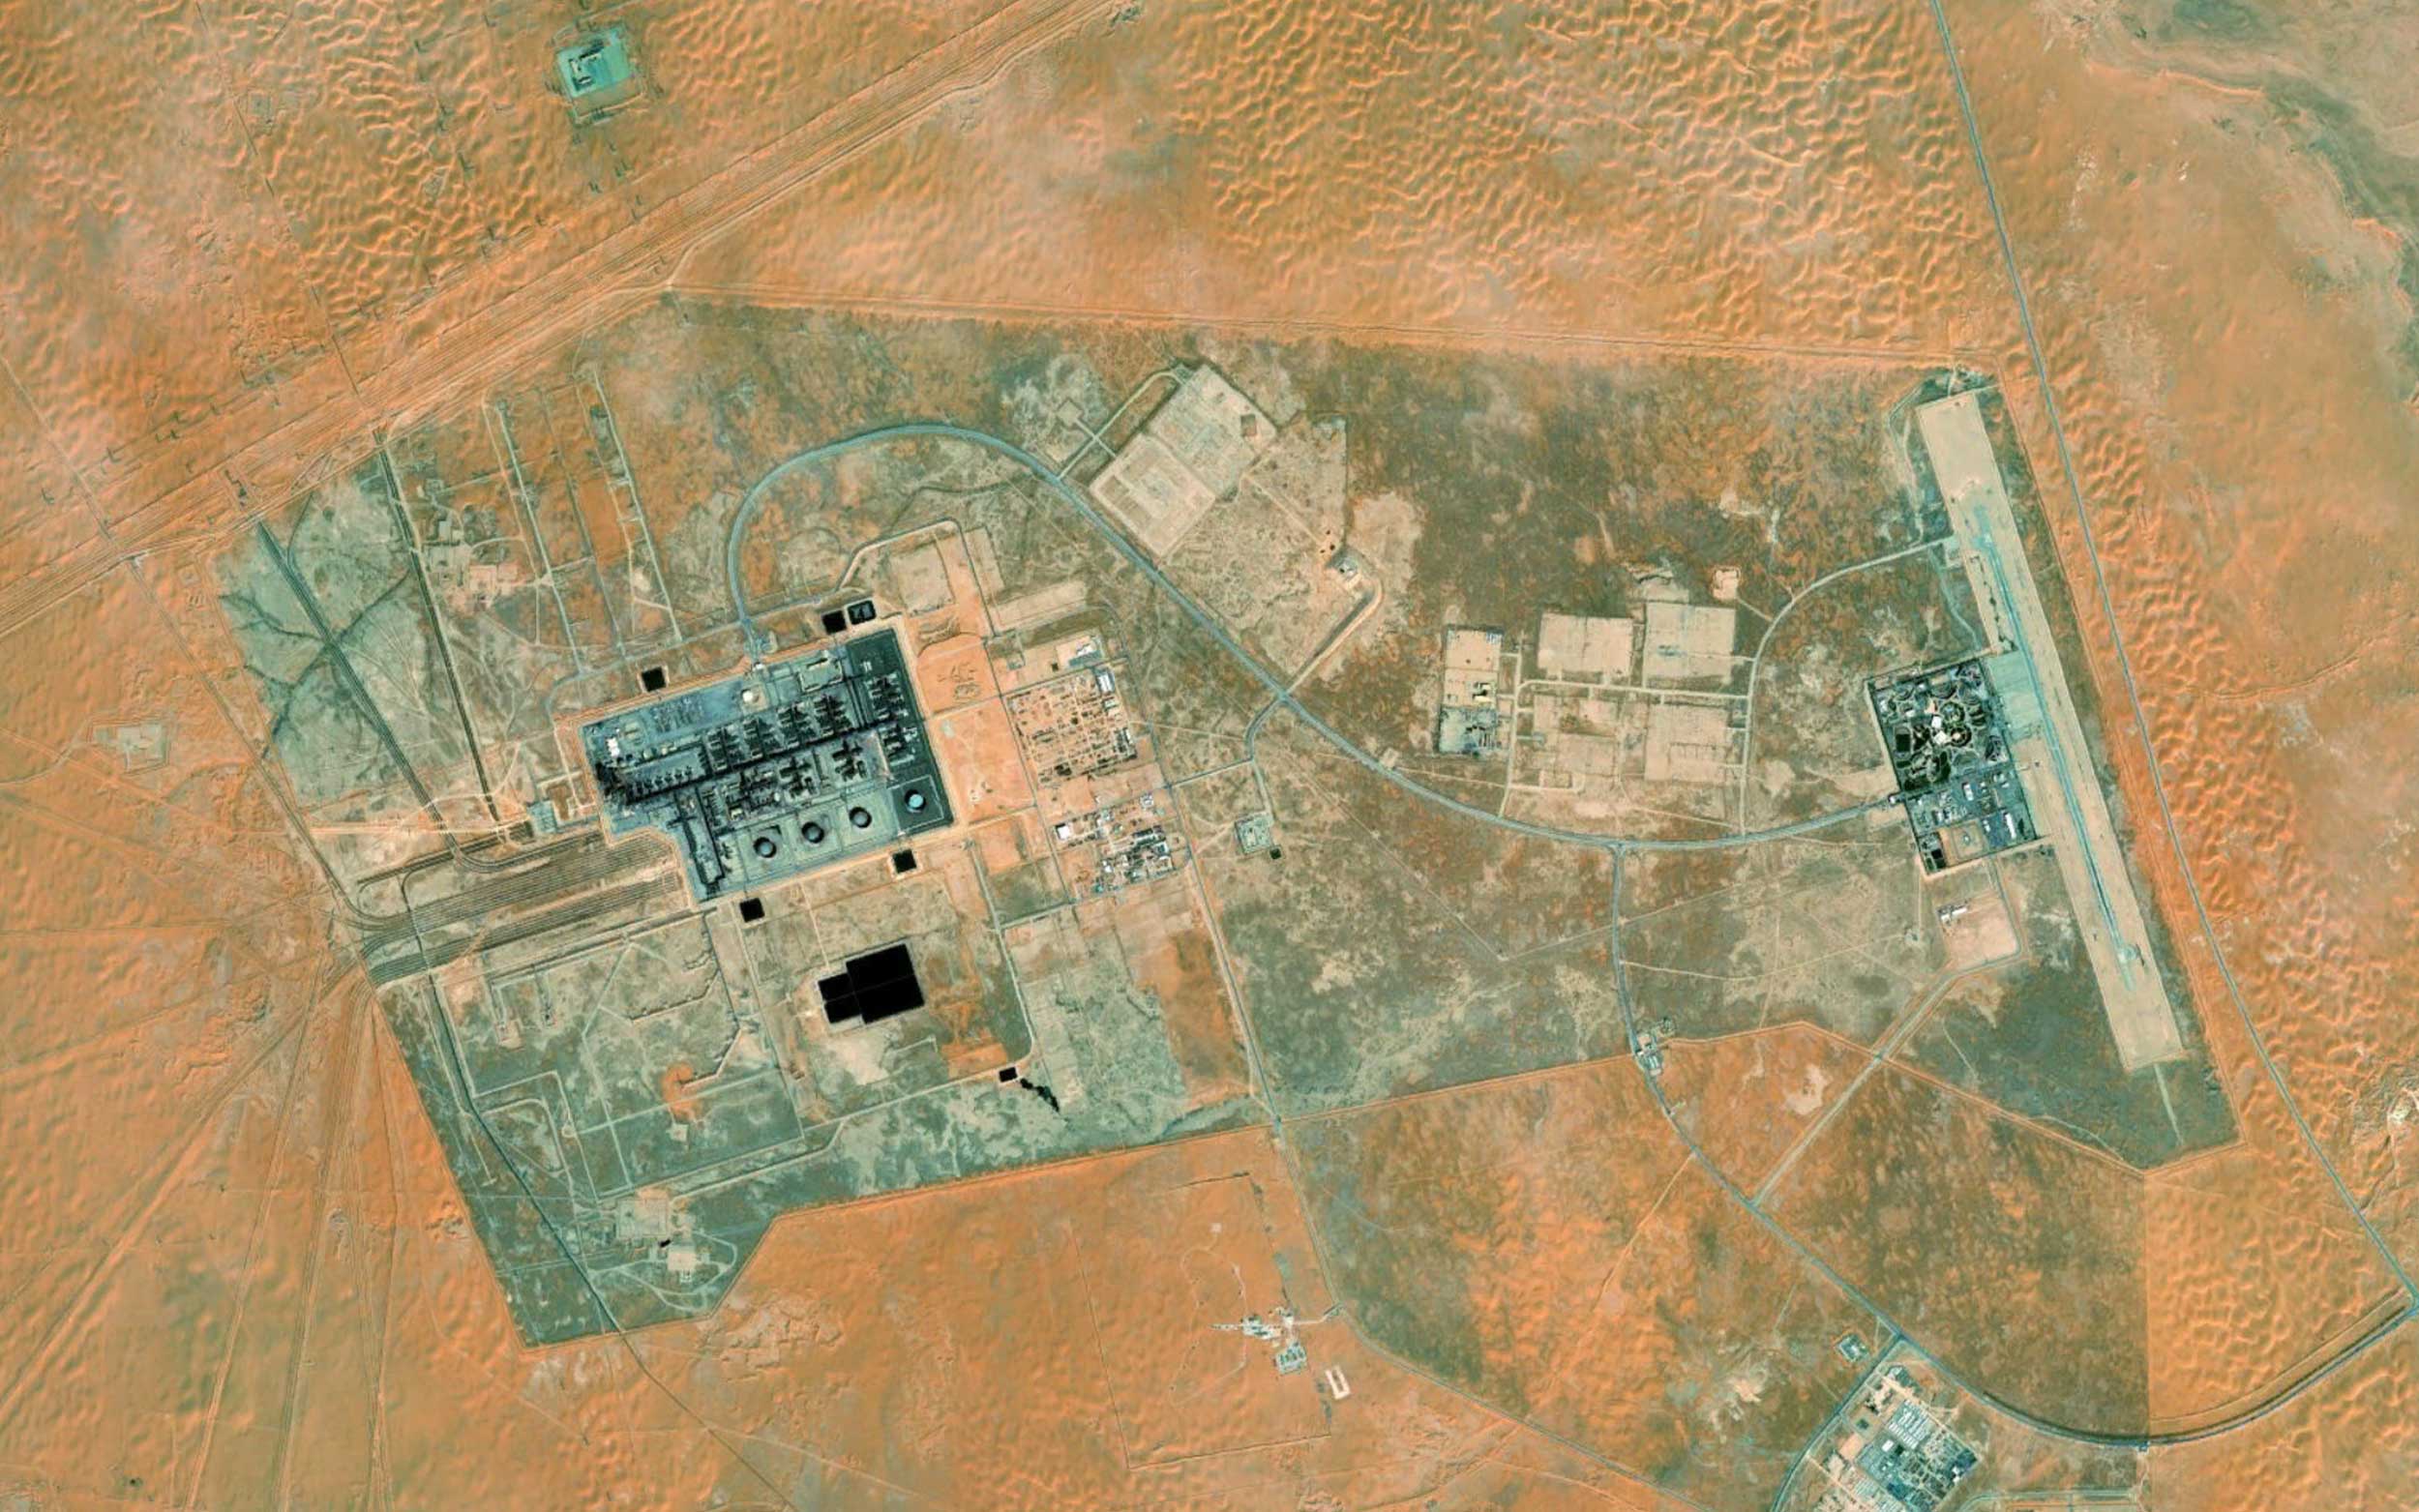 Quds-1-khurais-oil-field-geolocation-satellite